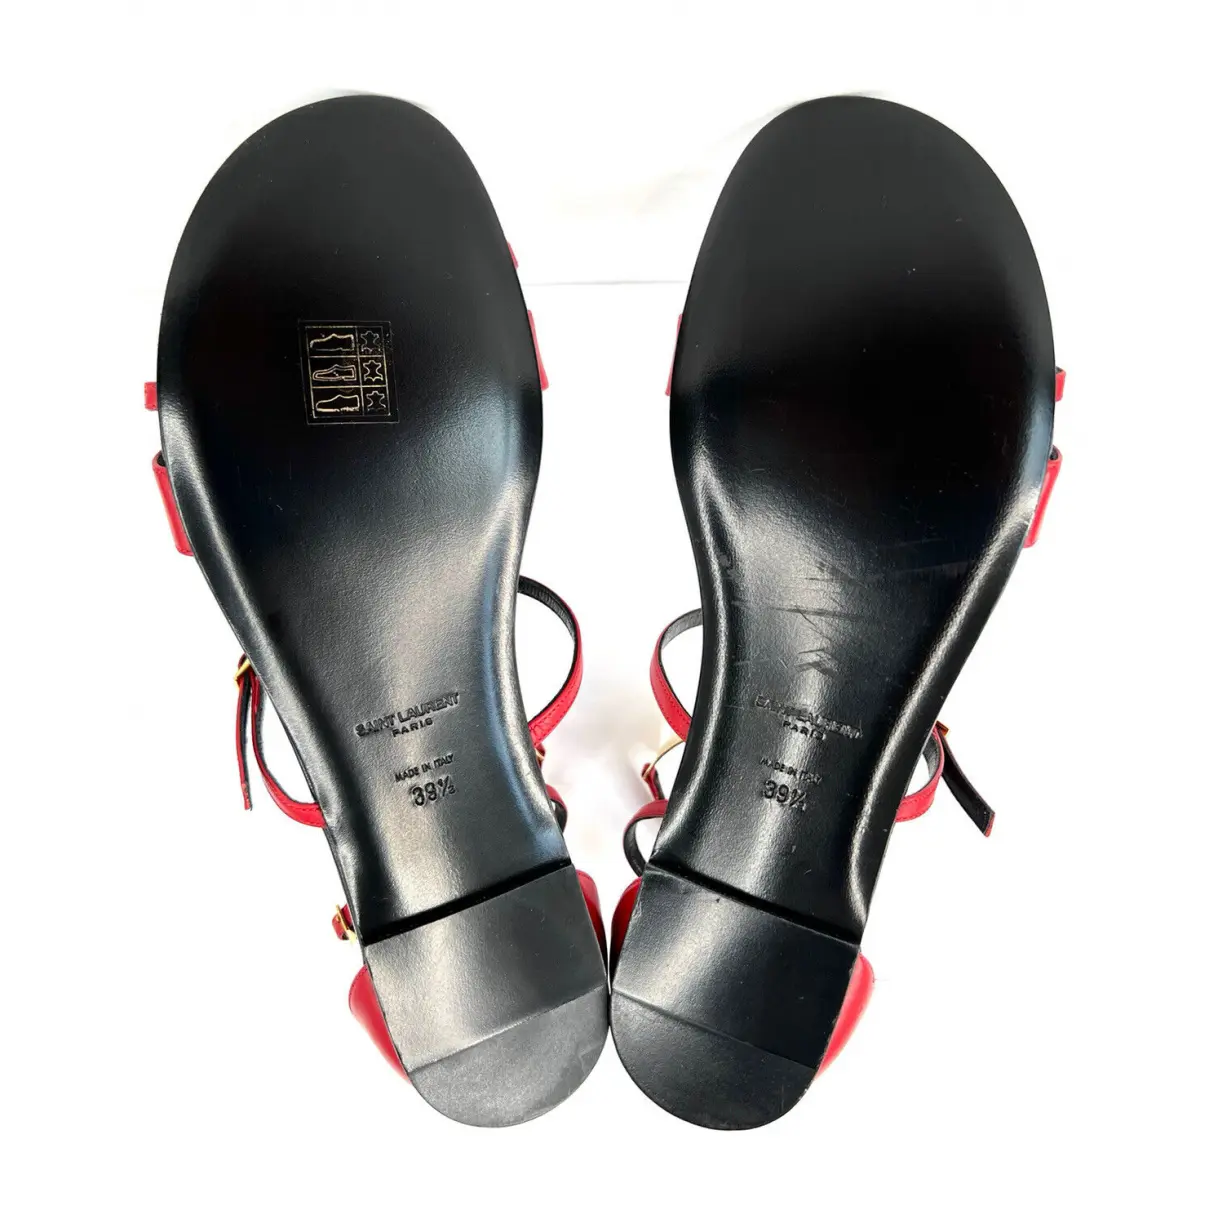 Leather sandals Saint Laurent